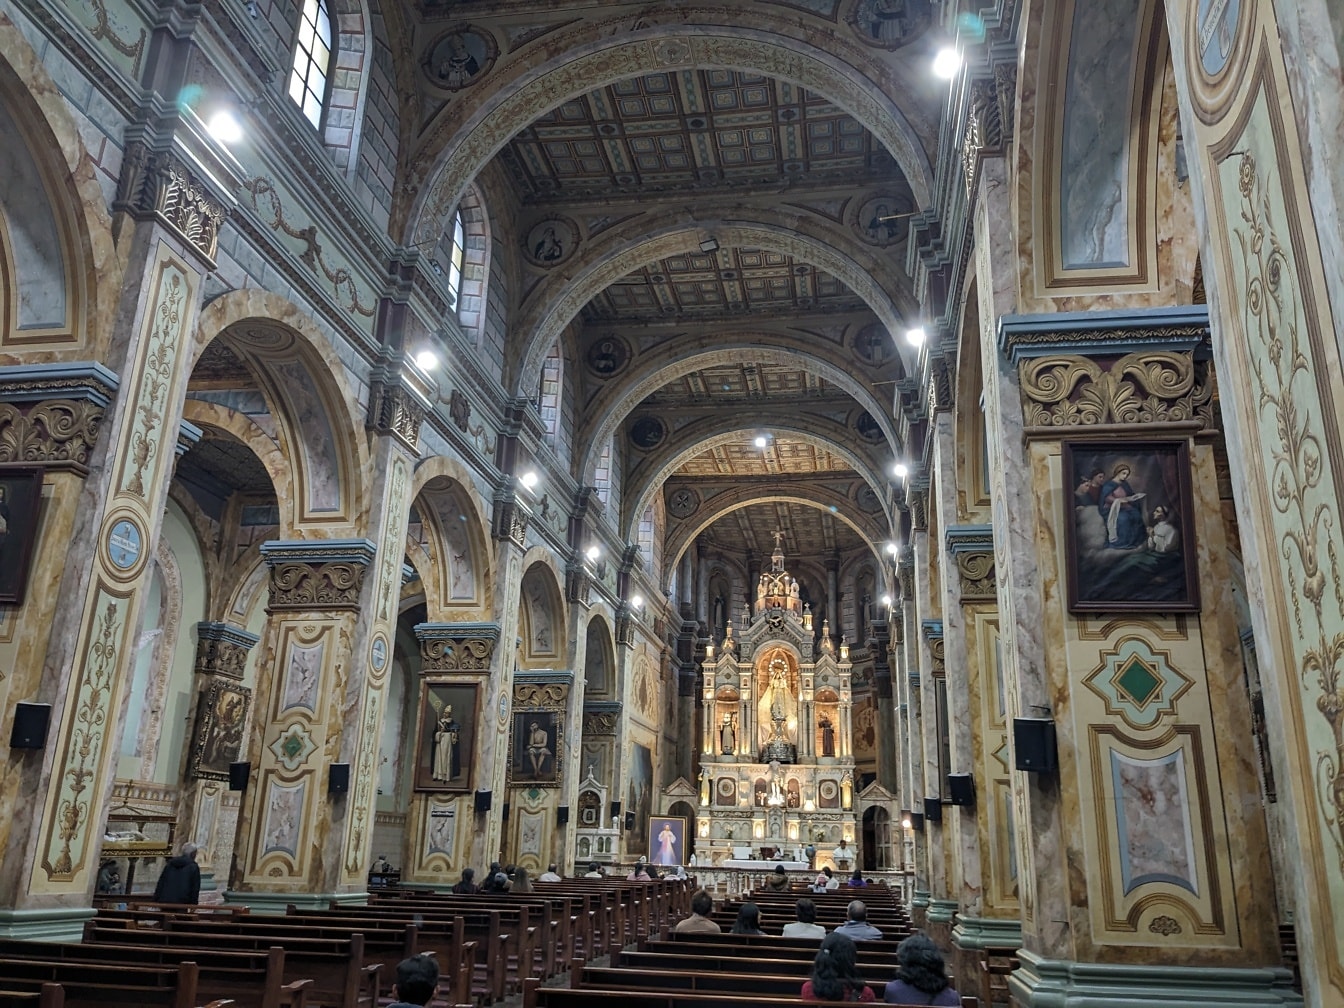 Santo Domingon katolisen kirkon kauniisti sisustettu sisustus majesteettisella alttarilla Cuencassa, Ecuadorissa